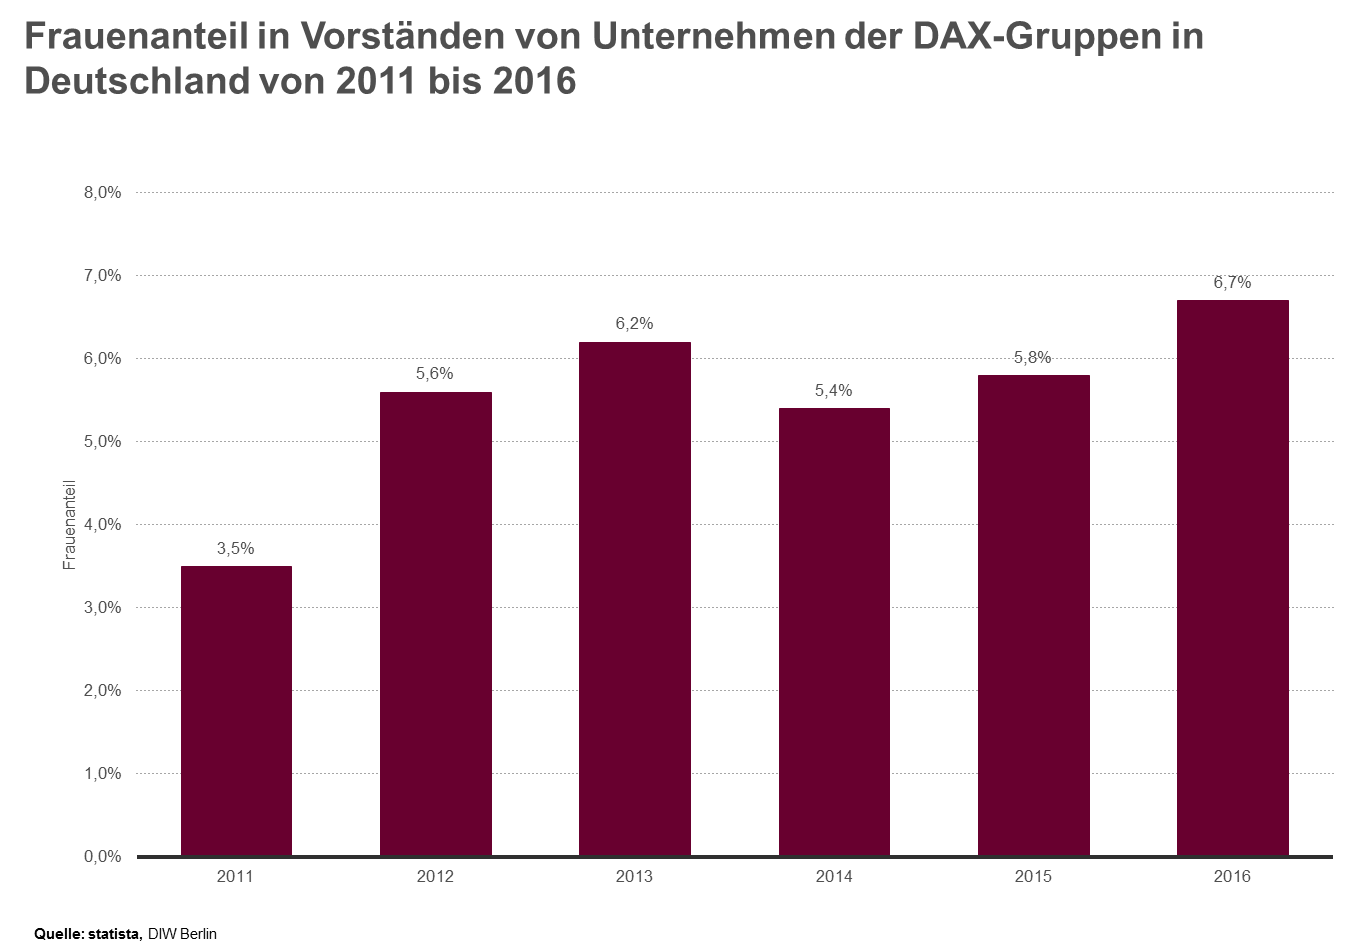 Frauenanteil in Vorständen von Unternehmen der DAX-Gruppen 2011-2016